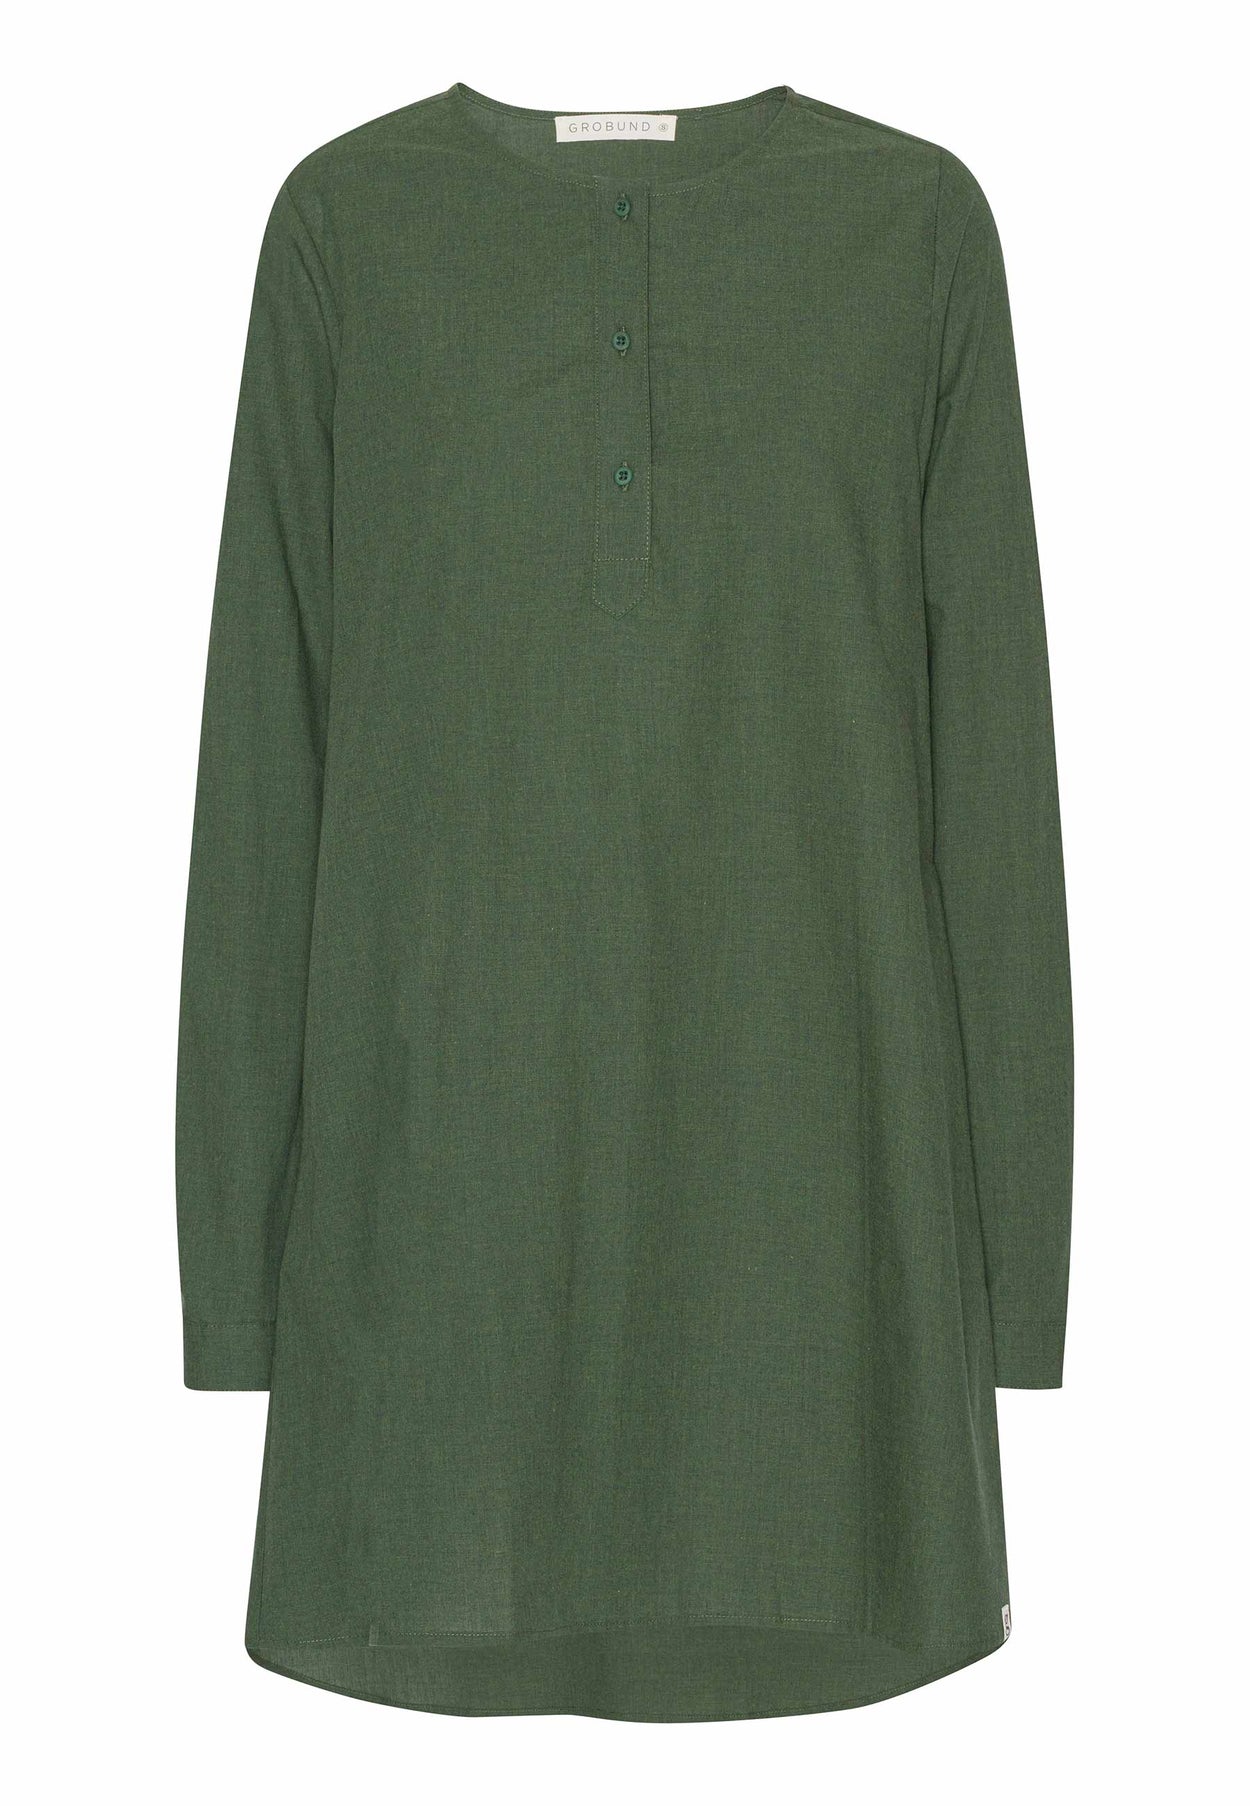 GROBUND Johanne kjole - den i grøn melange